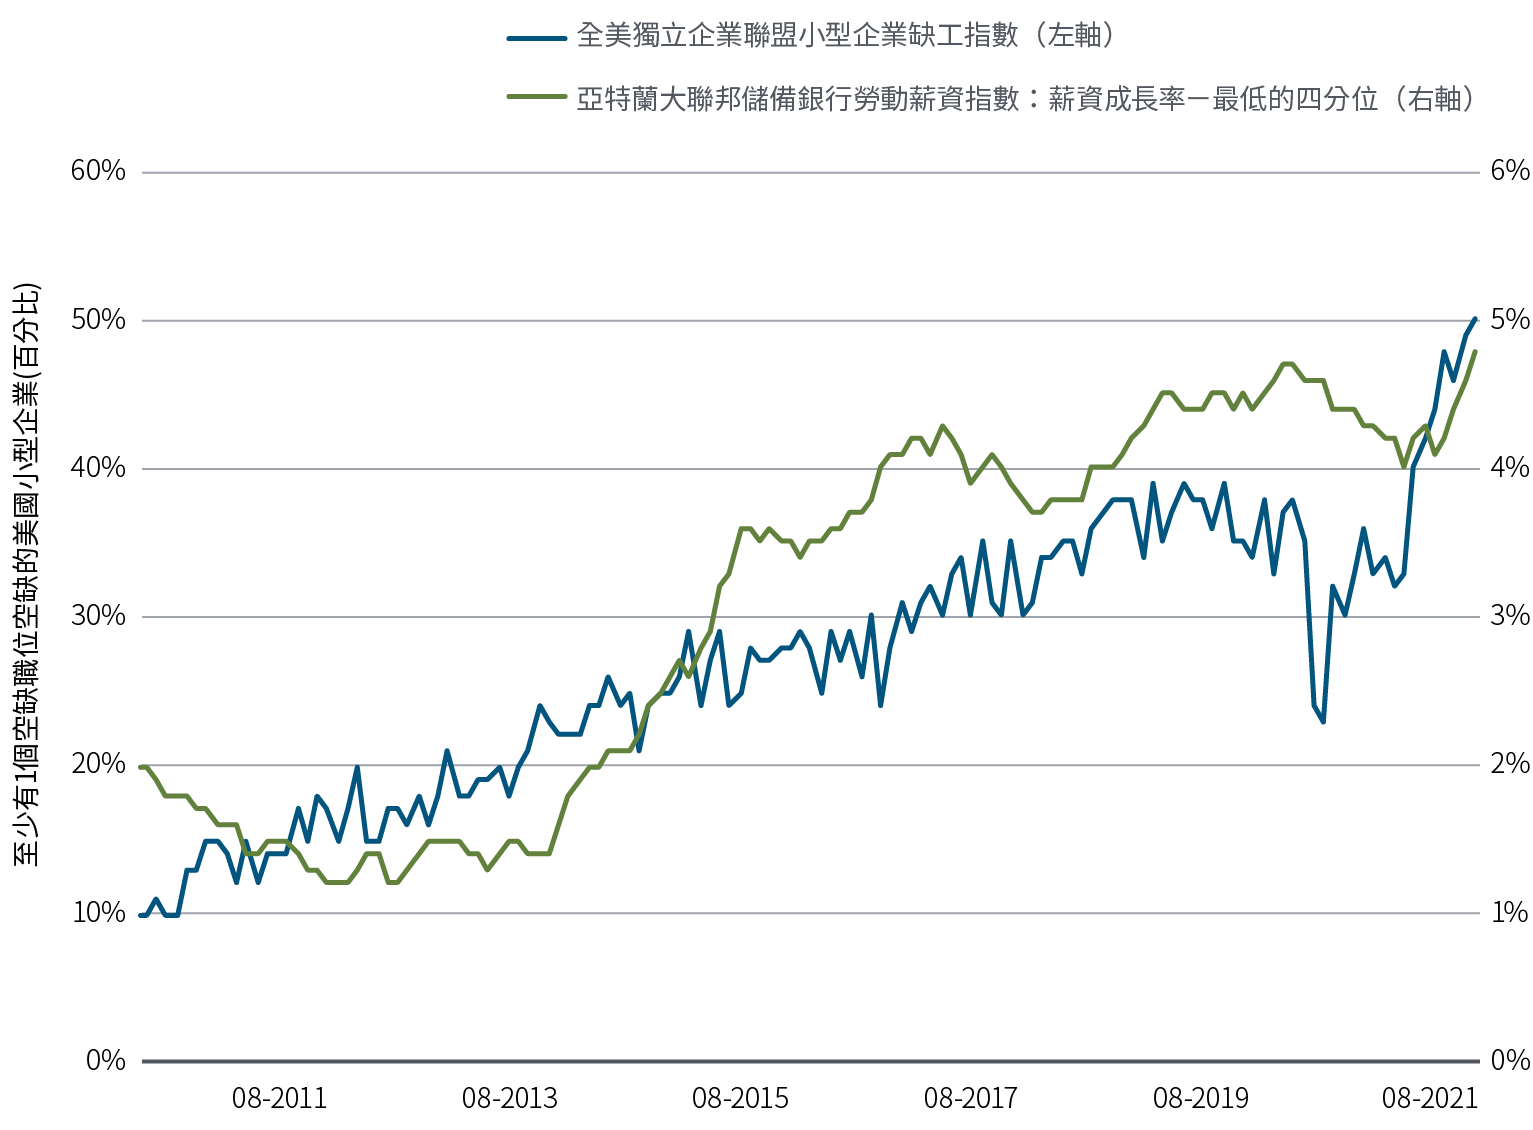 圖一之線圖係依兩組統計數據，統計時間為2010年8月至2021年8月。全美獨立企業聯盟小型企業缺工指數之起點為10點，並在統計期間攀升至50點以上；除了在2020年短暫下降之外，其餘時間大致呈現穩定攀升的趨勢。亞特蘭大聯邦儲備銀行勞動薪資指數之統計時期起點為2010年8月，當時薪資排名末四分位之成長率約為2%，經歷接續幾年的下降趨勢後，接著以時高時低的幅度持續攀升，並在2021年8月達到4.8%的薪資漲幅。